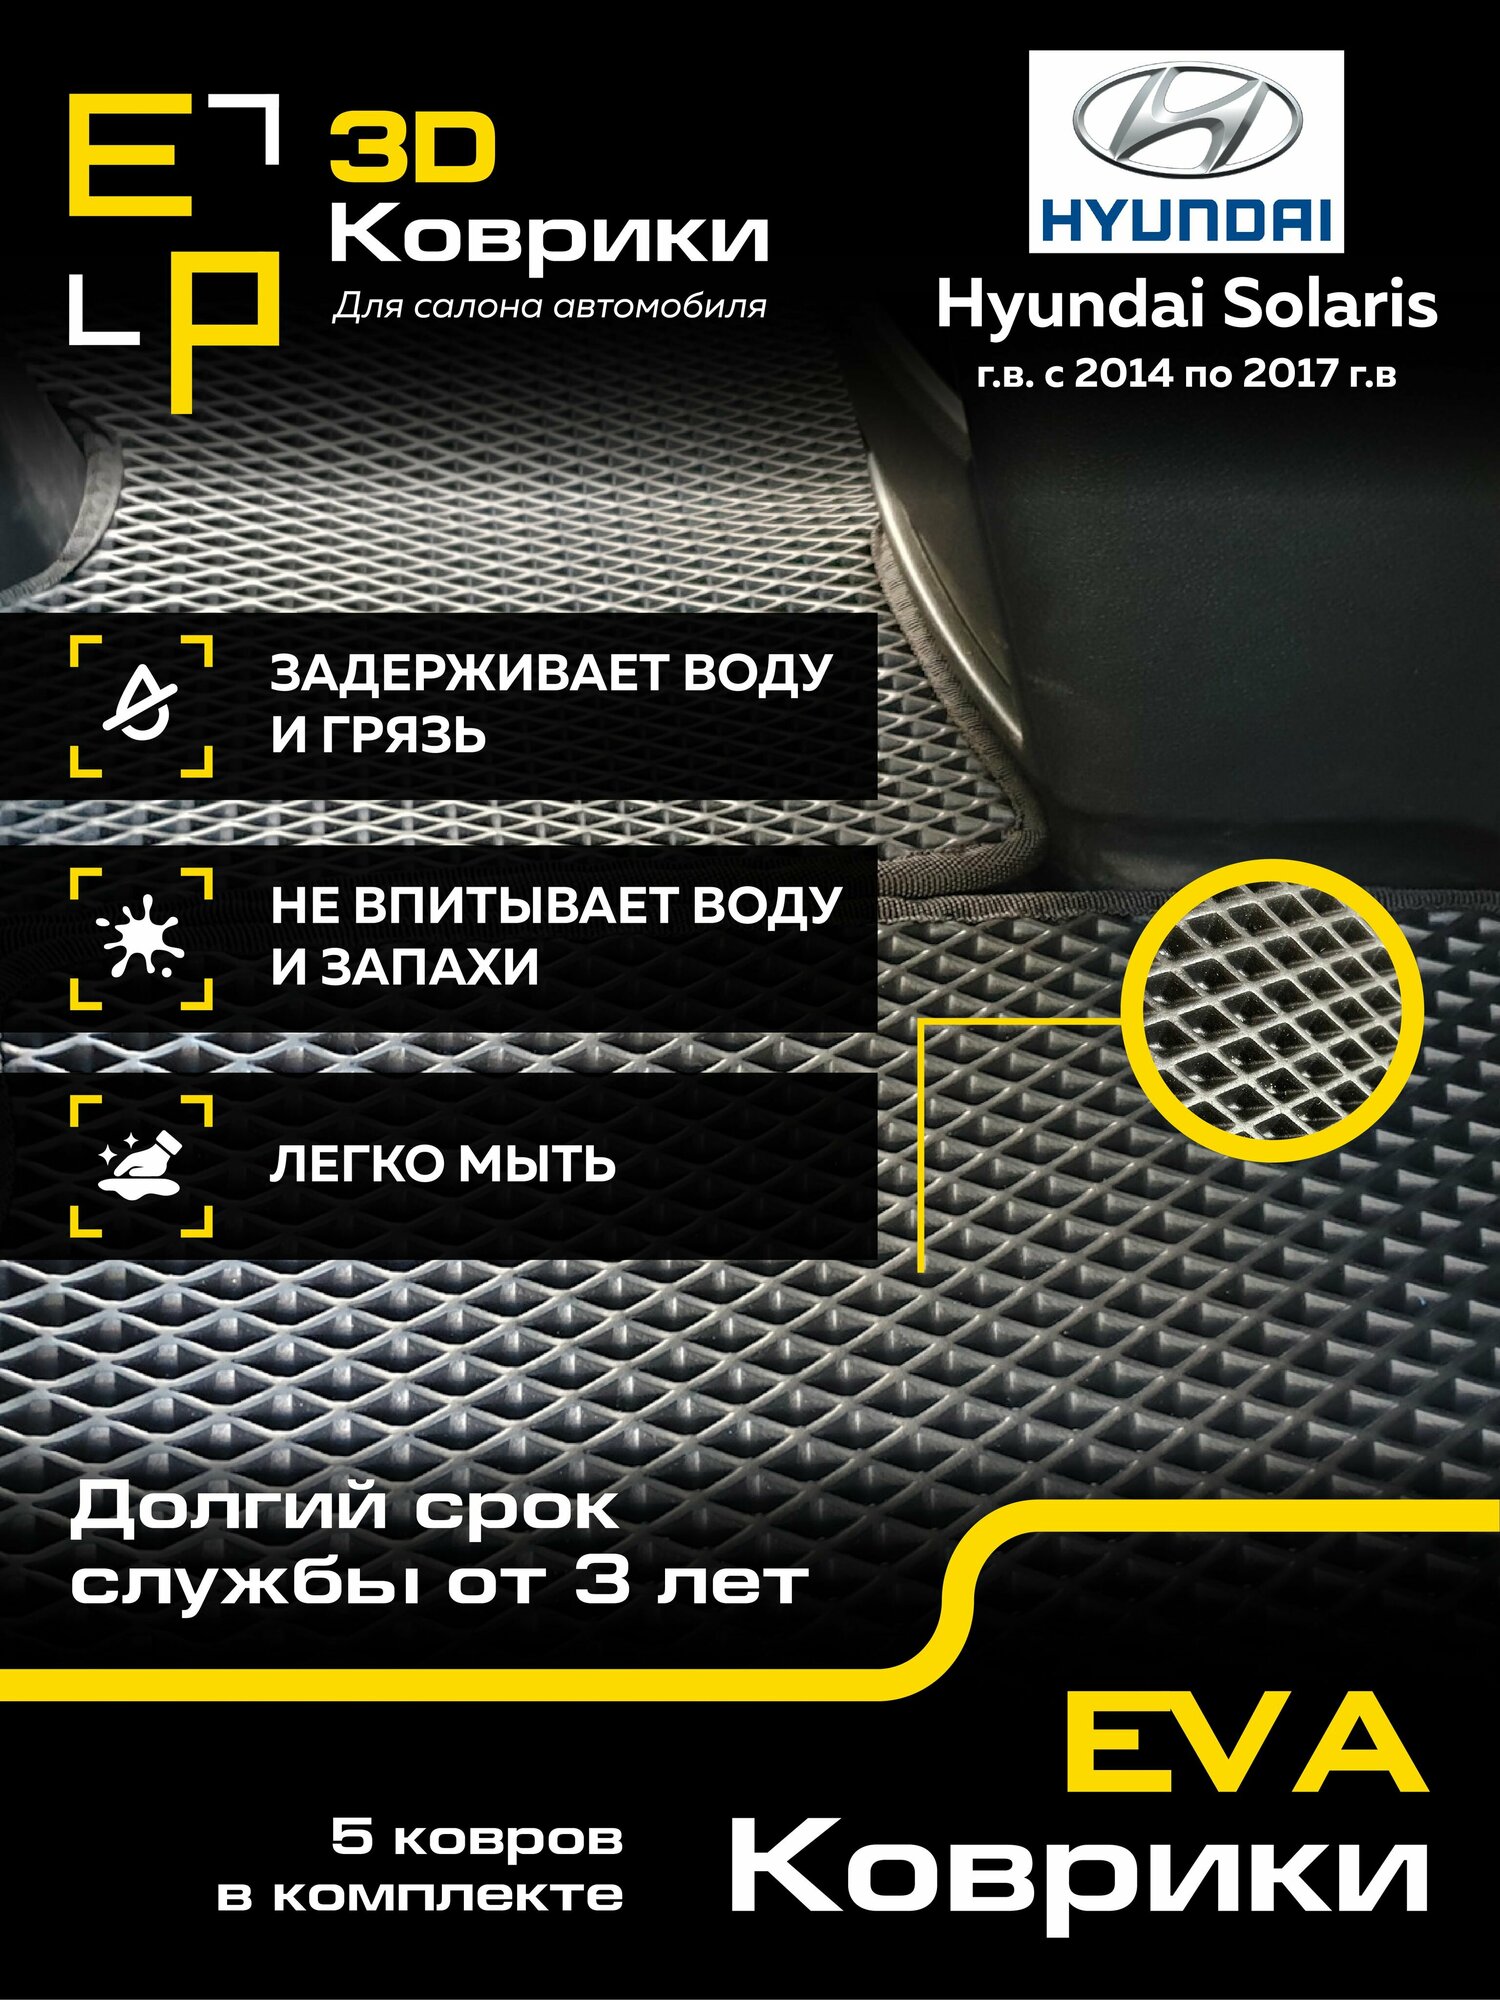 Коврики в машину Hyundai Solaris 3D с черным кантом, 2014-2017 года выпуска